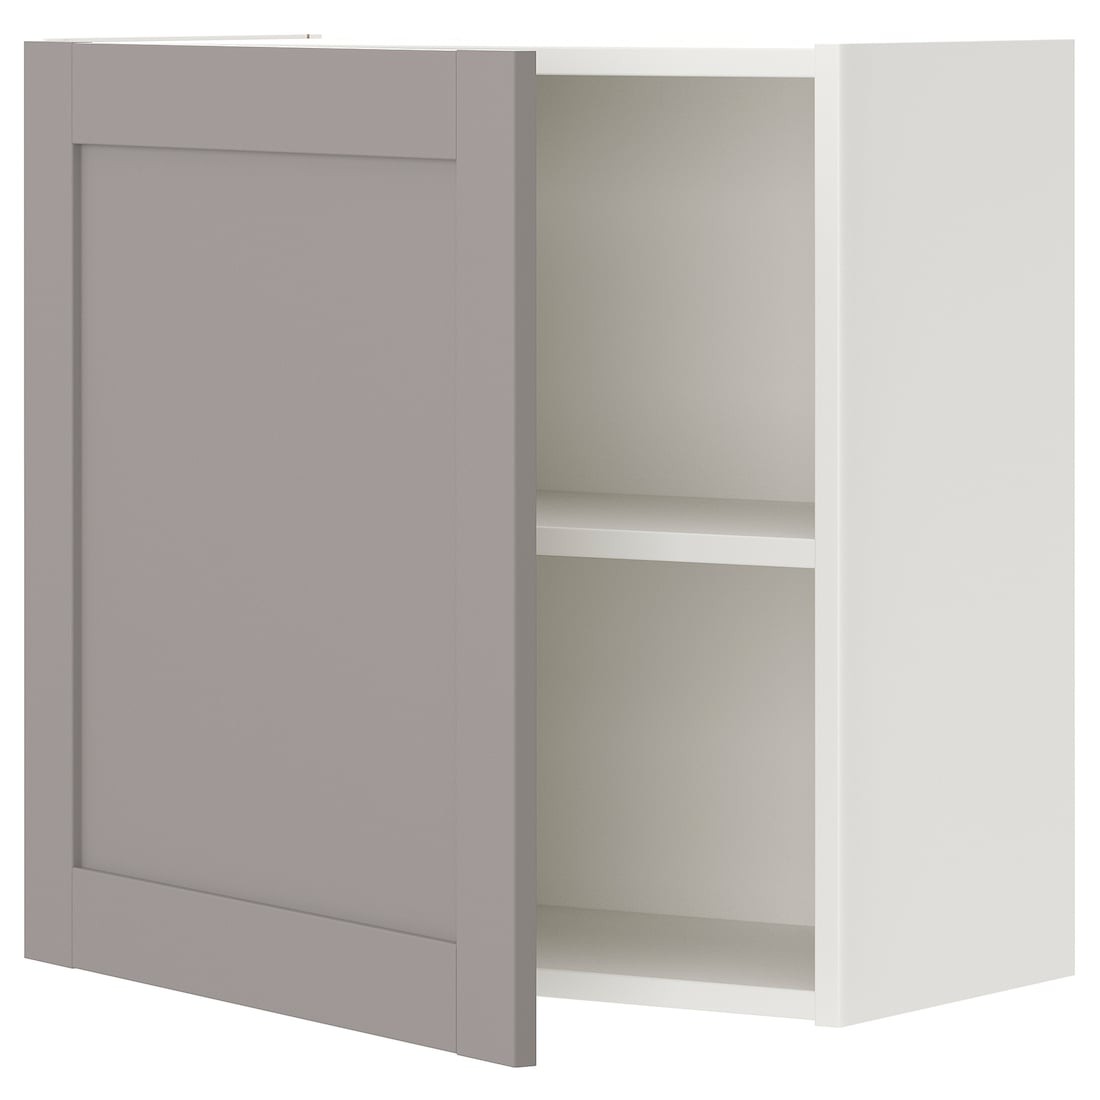 IKEA ENHET ЭНХЕТ Навесной шкаф с 1 полкой / дверями, белый / серая рамка, 60x32x60 см 89321012 893.210.12